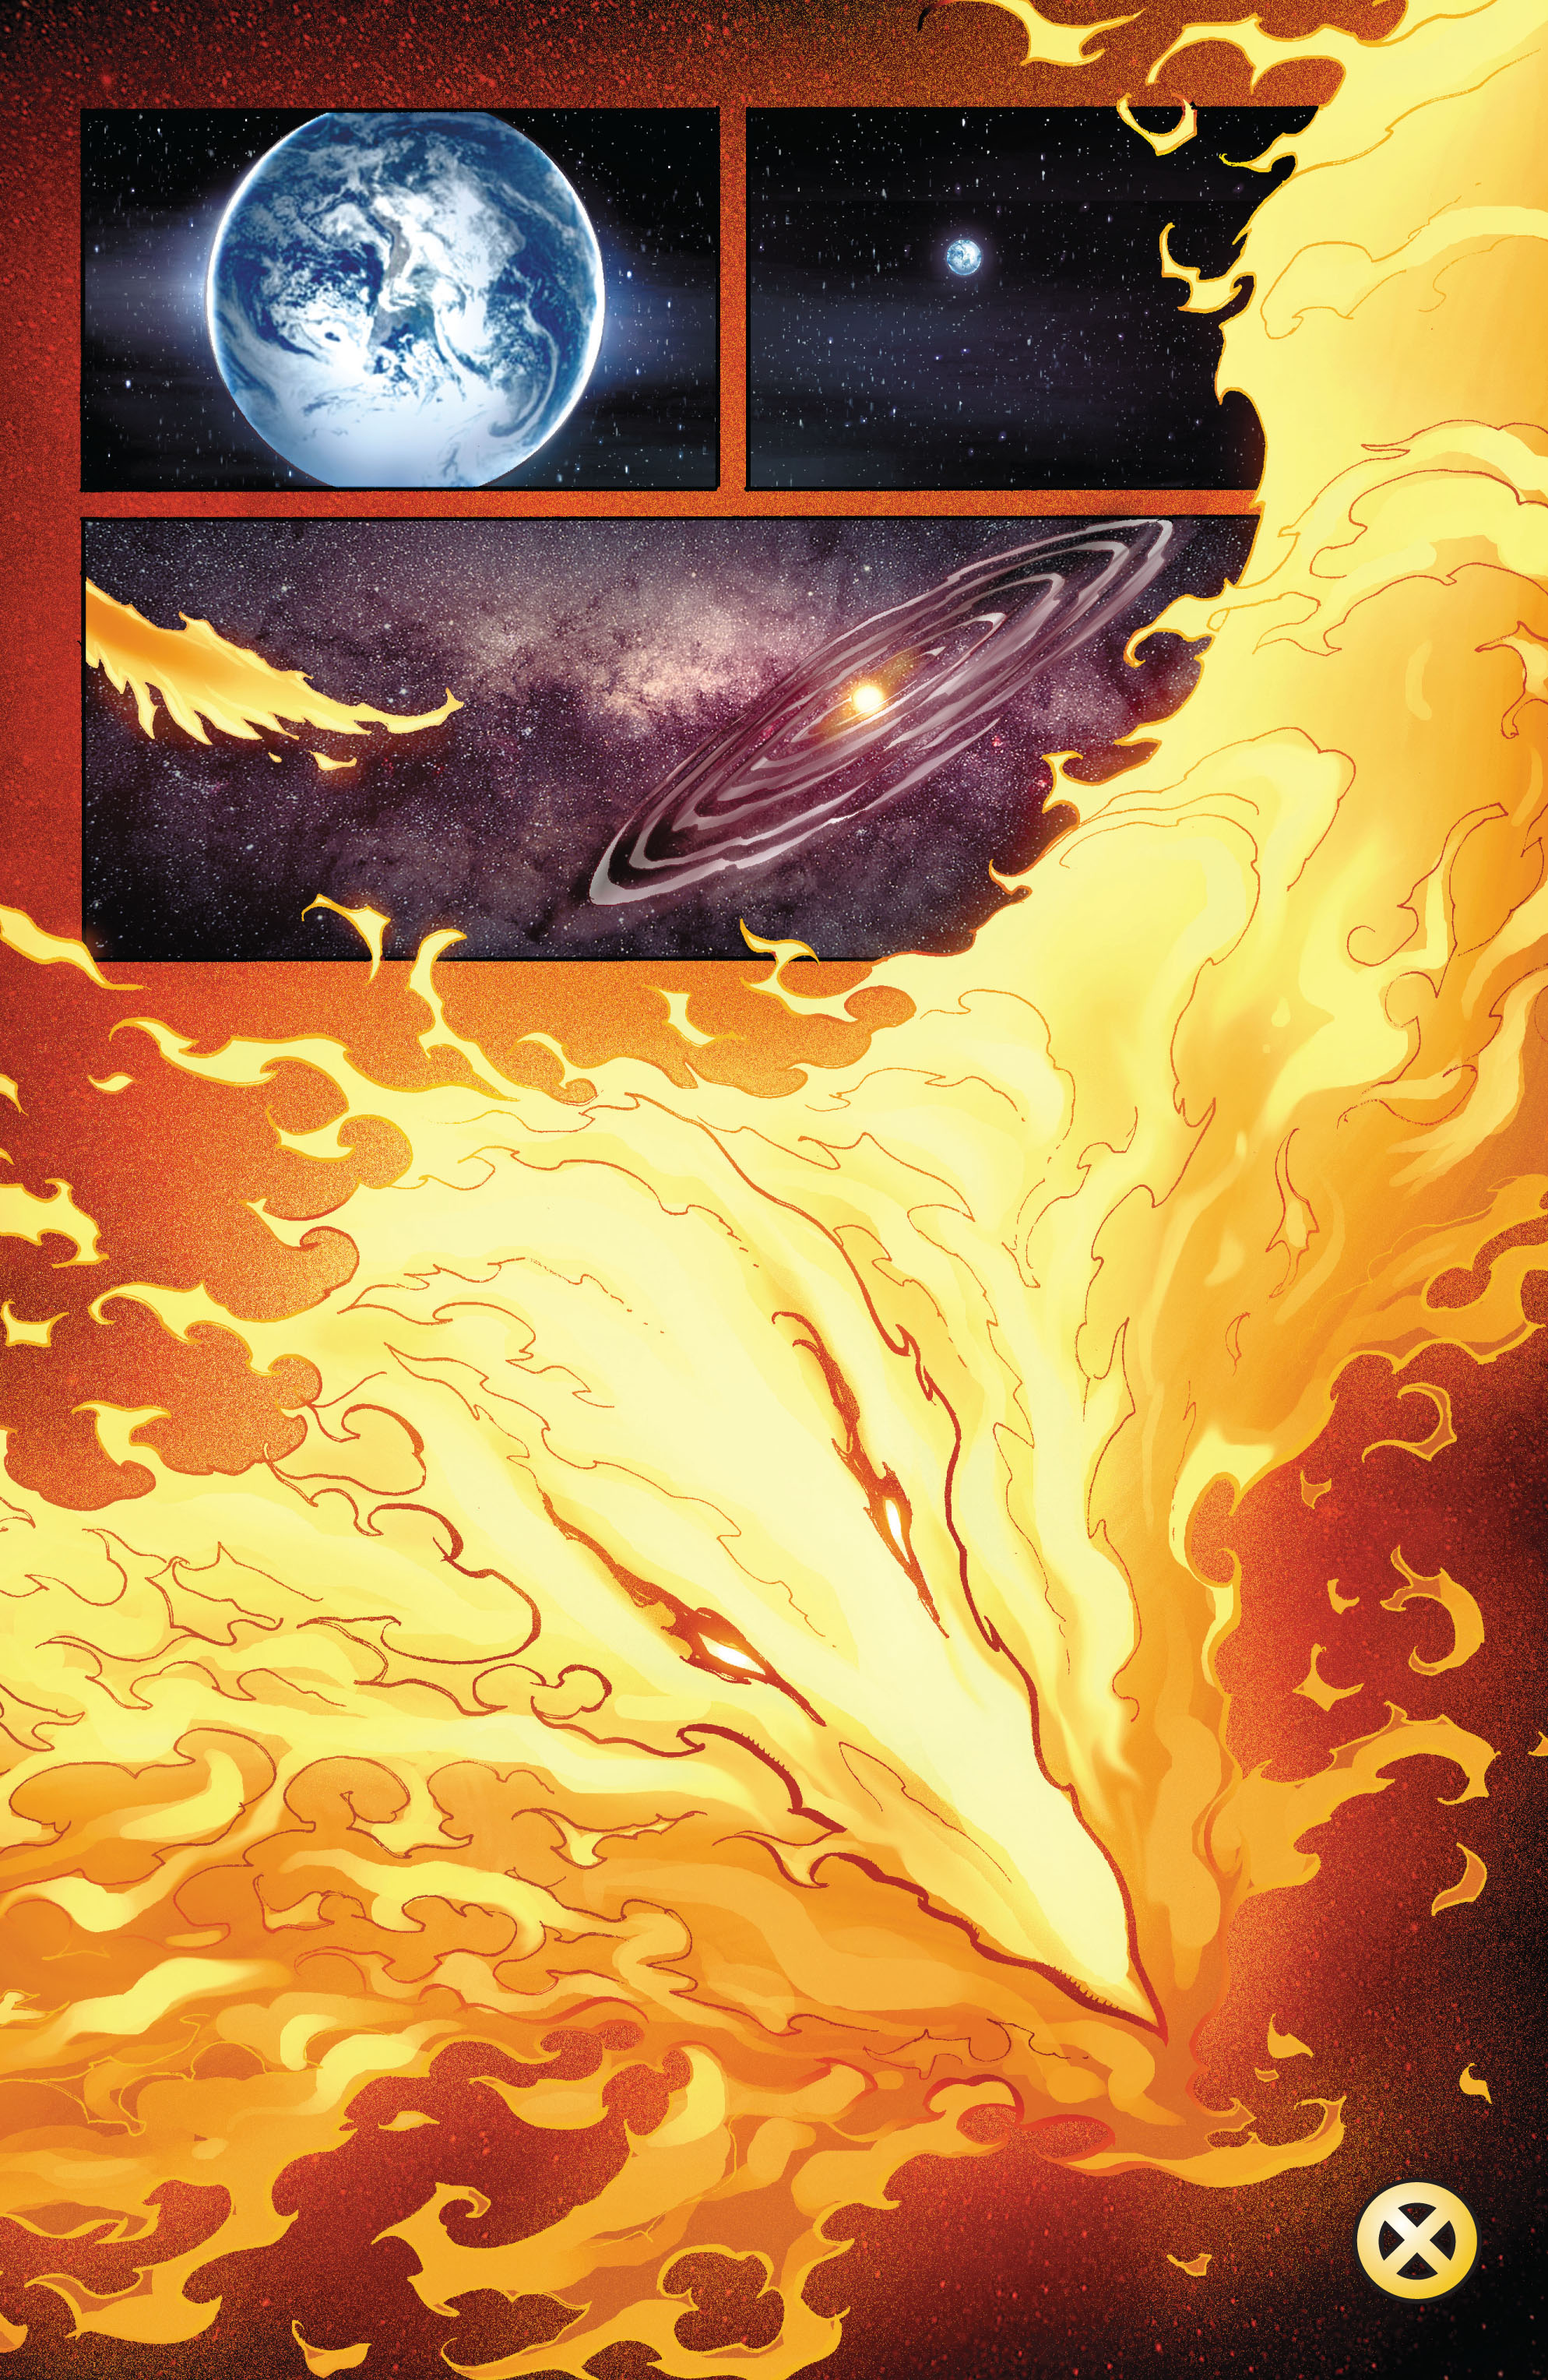 Read online Avengers Vs. X-Men comic -  Issue #0 - 29